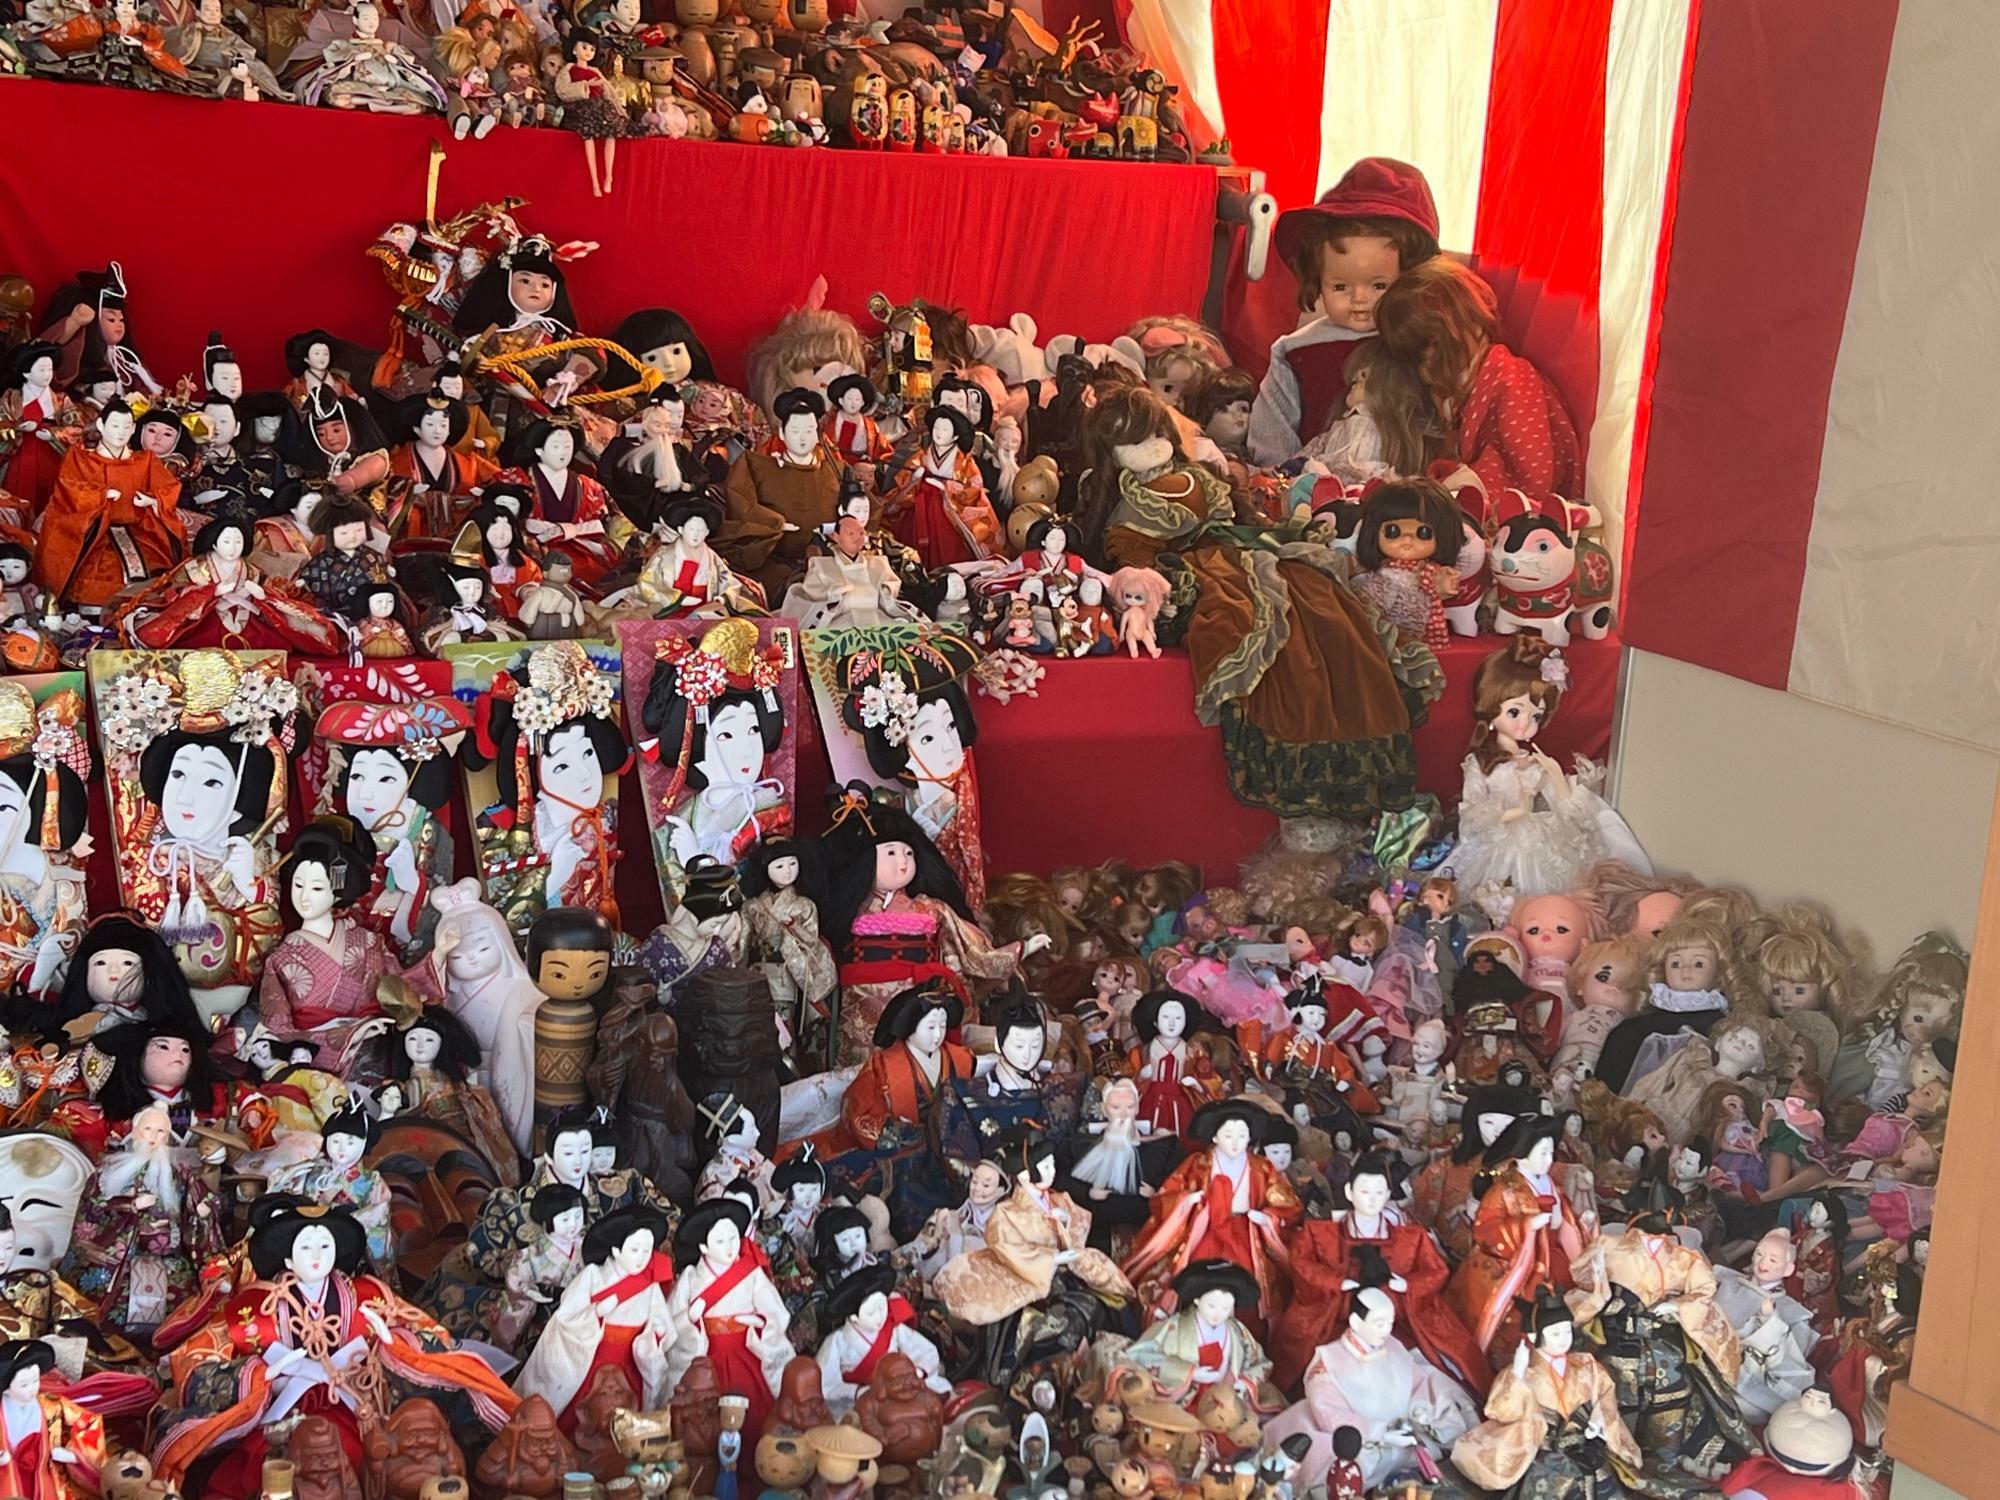 雛人形や五月人形がほとんどですが、中には羽子板や、こけし、海外の人形も